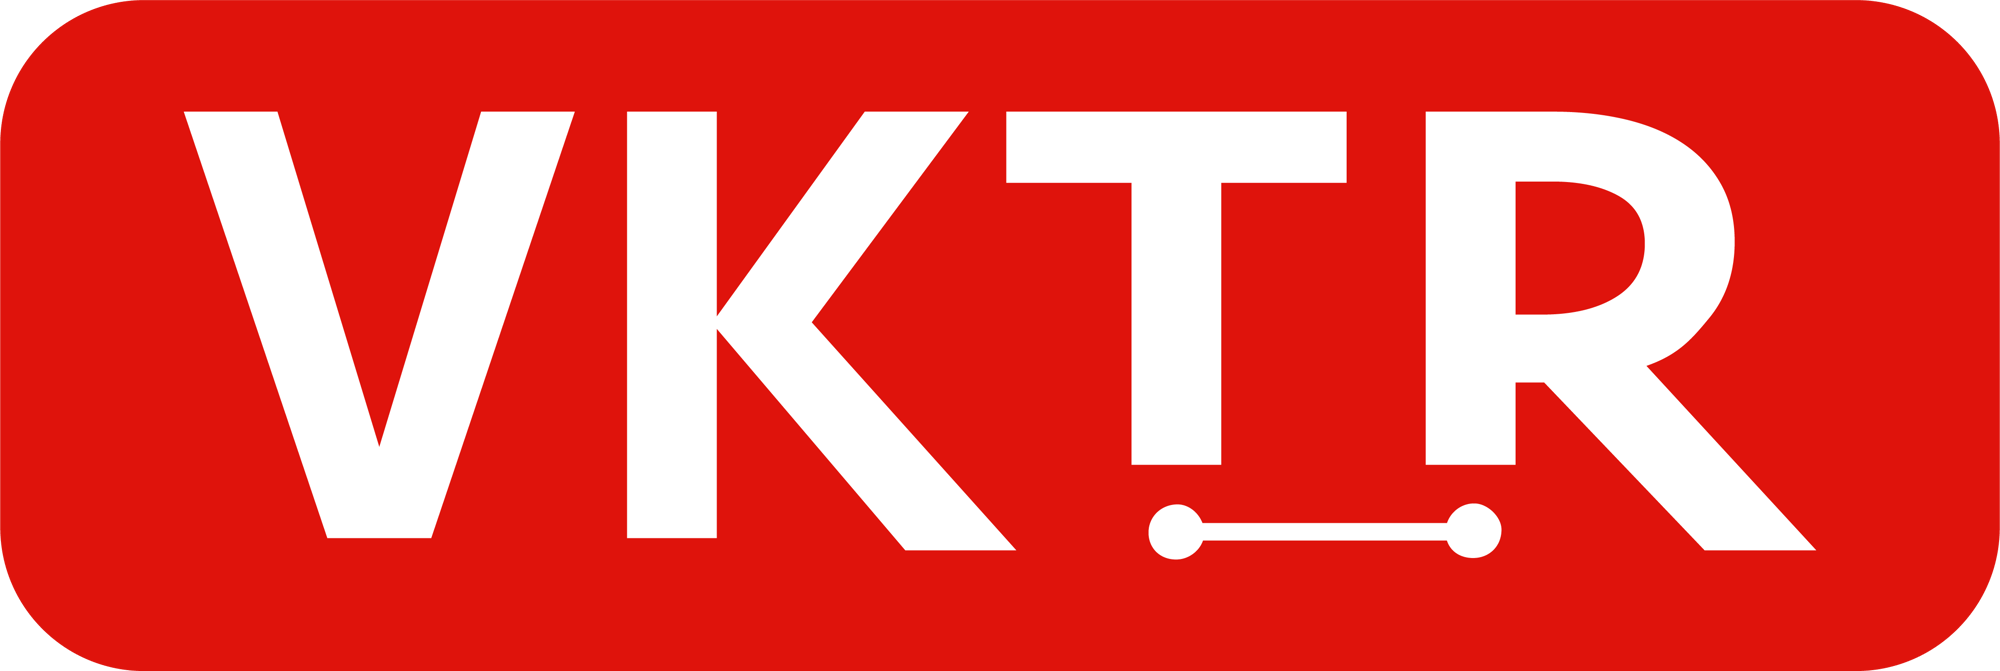 VKTR (pronounced vector) Logo